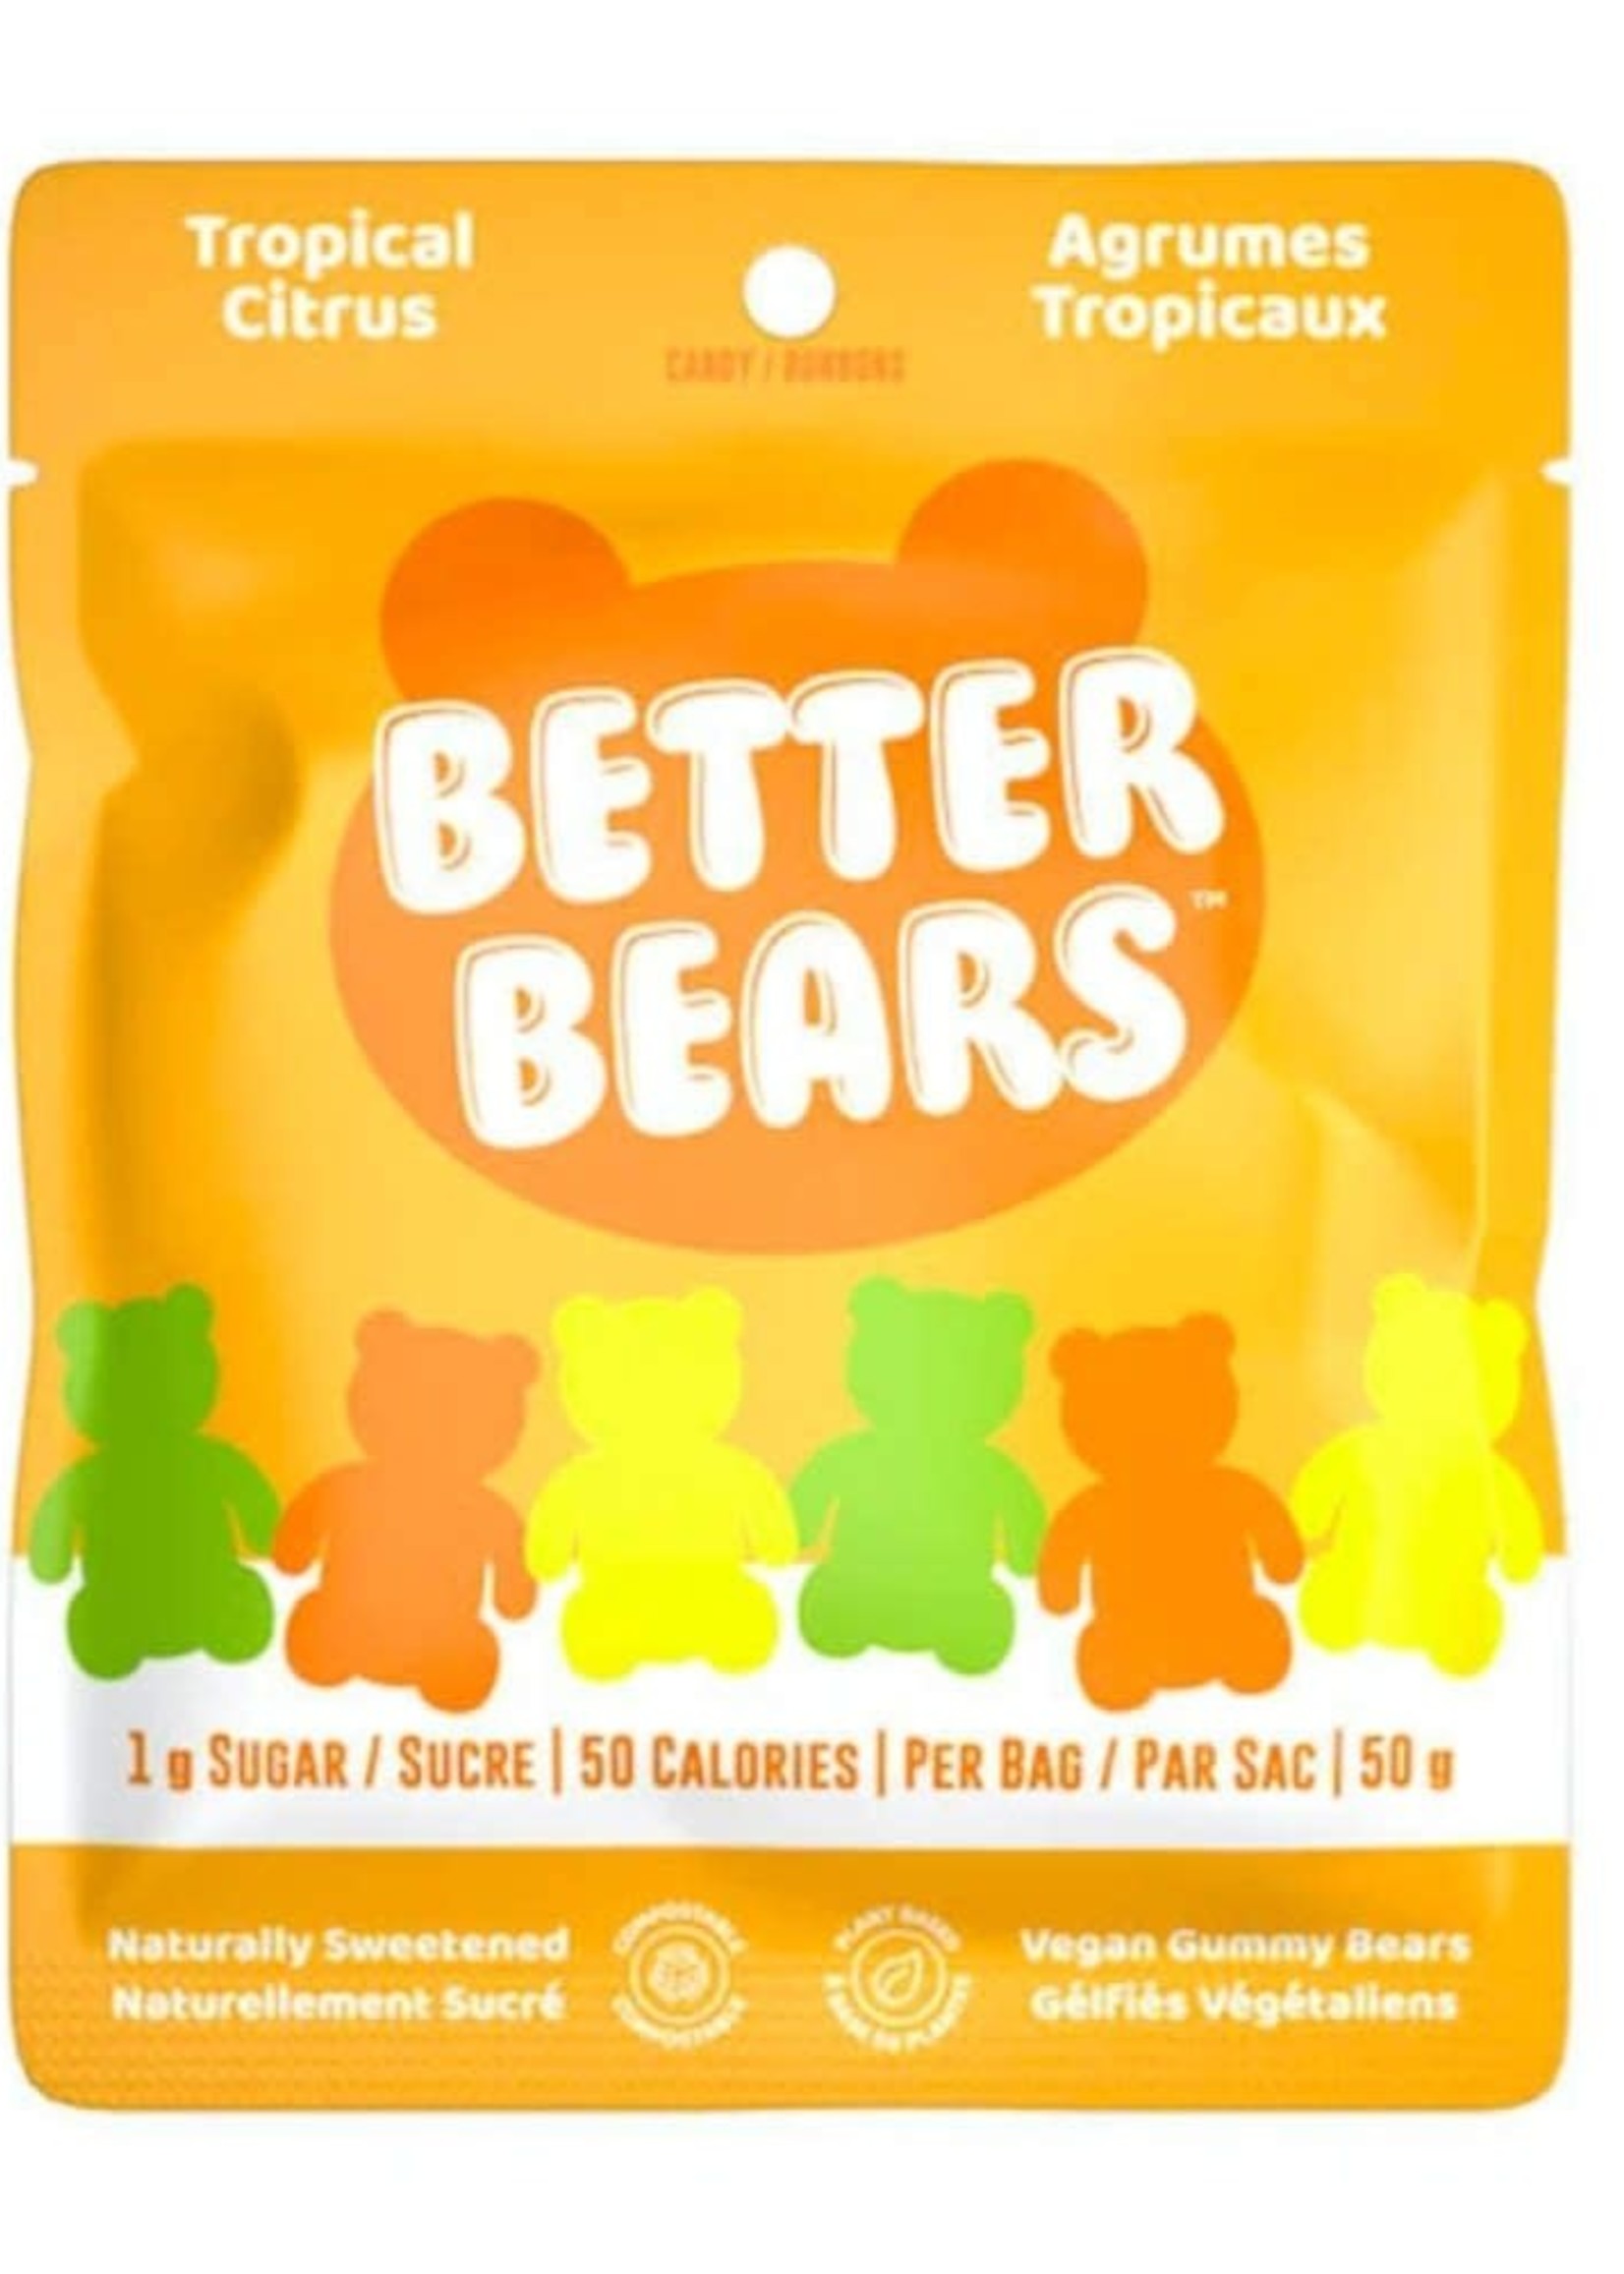 Better Bears Jujubes - Better Bears